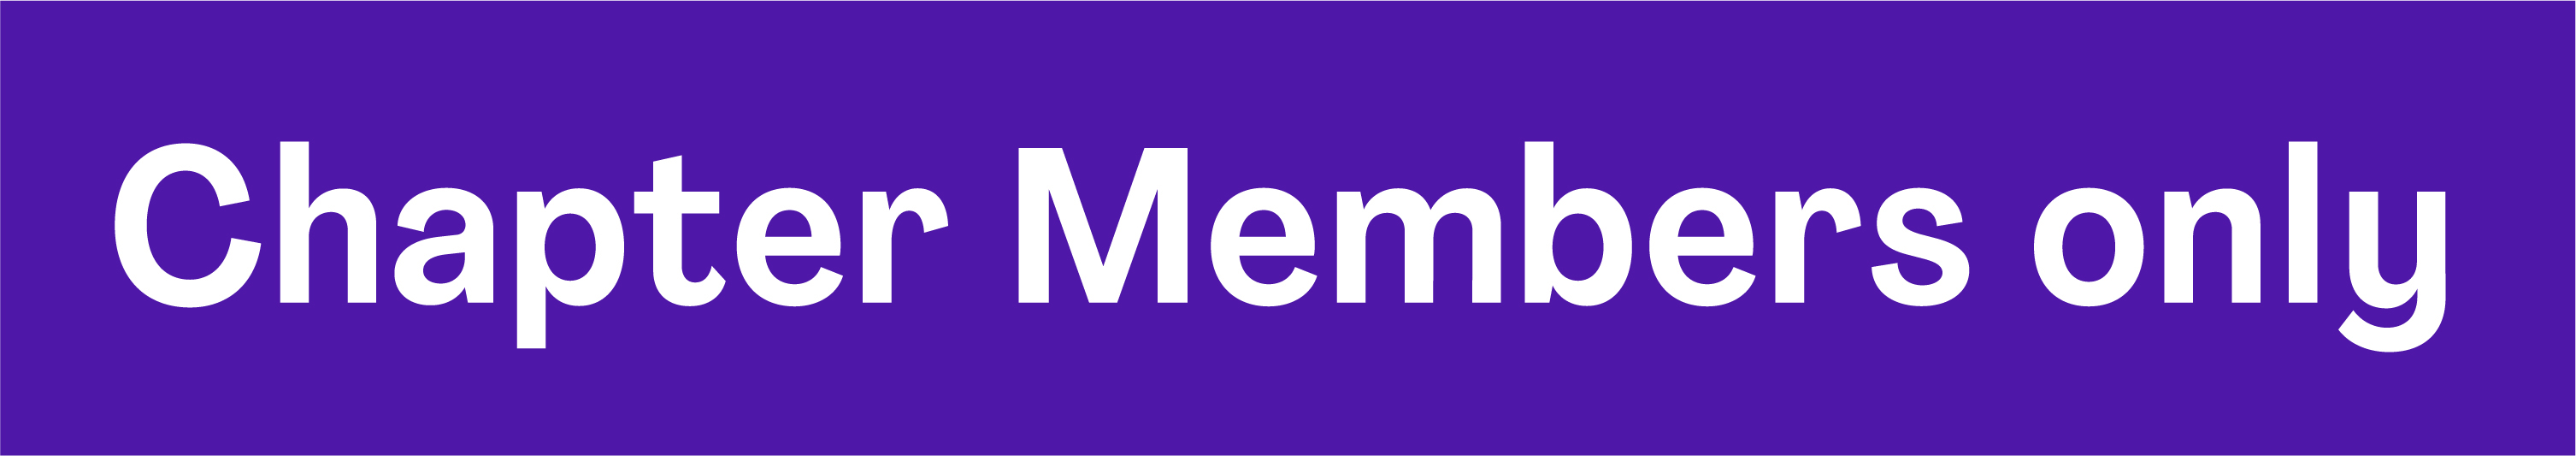 Member Only Logo